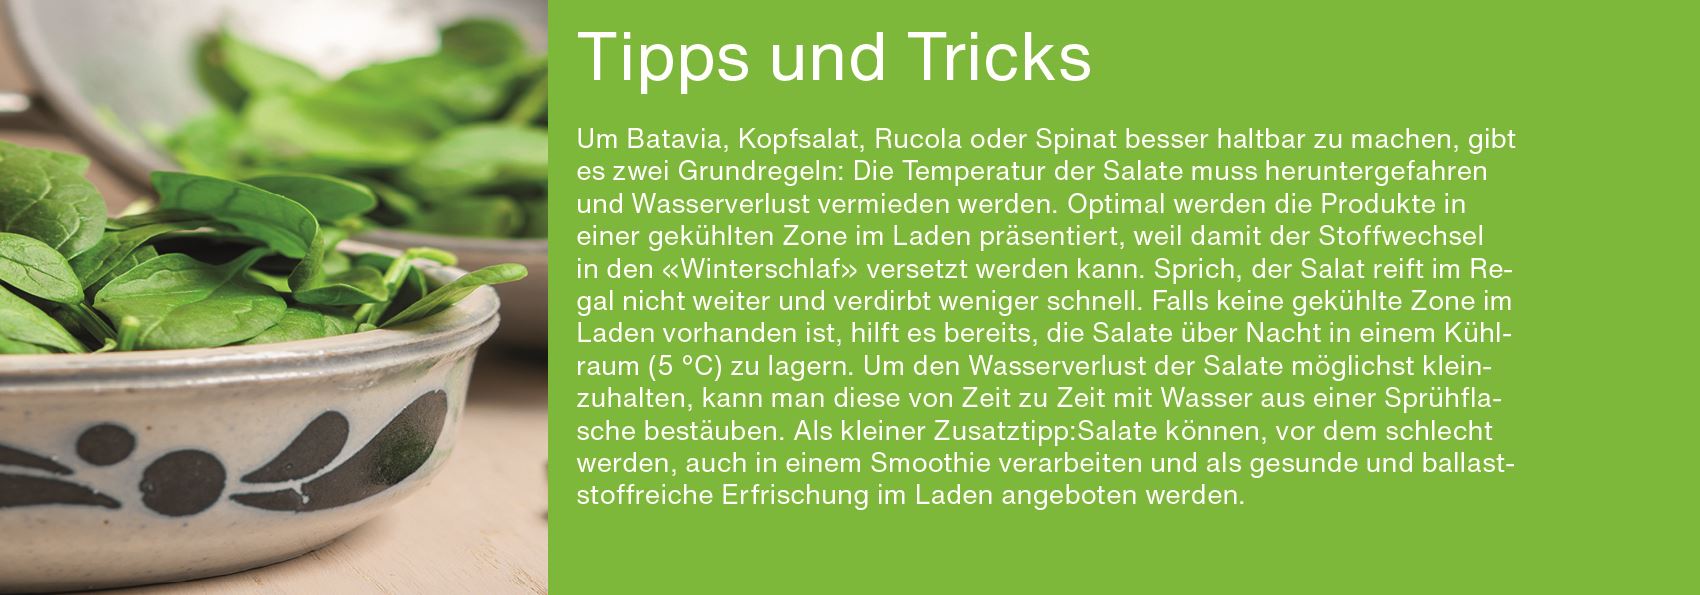 Tipps und Tricks Salate DE